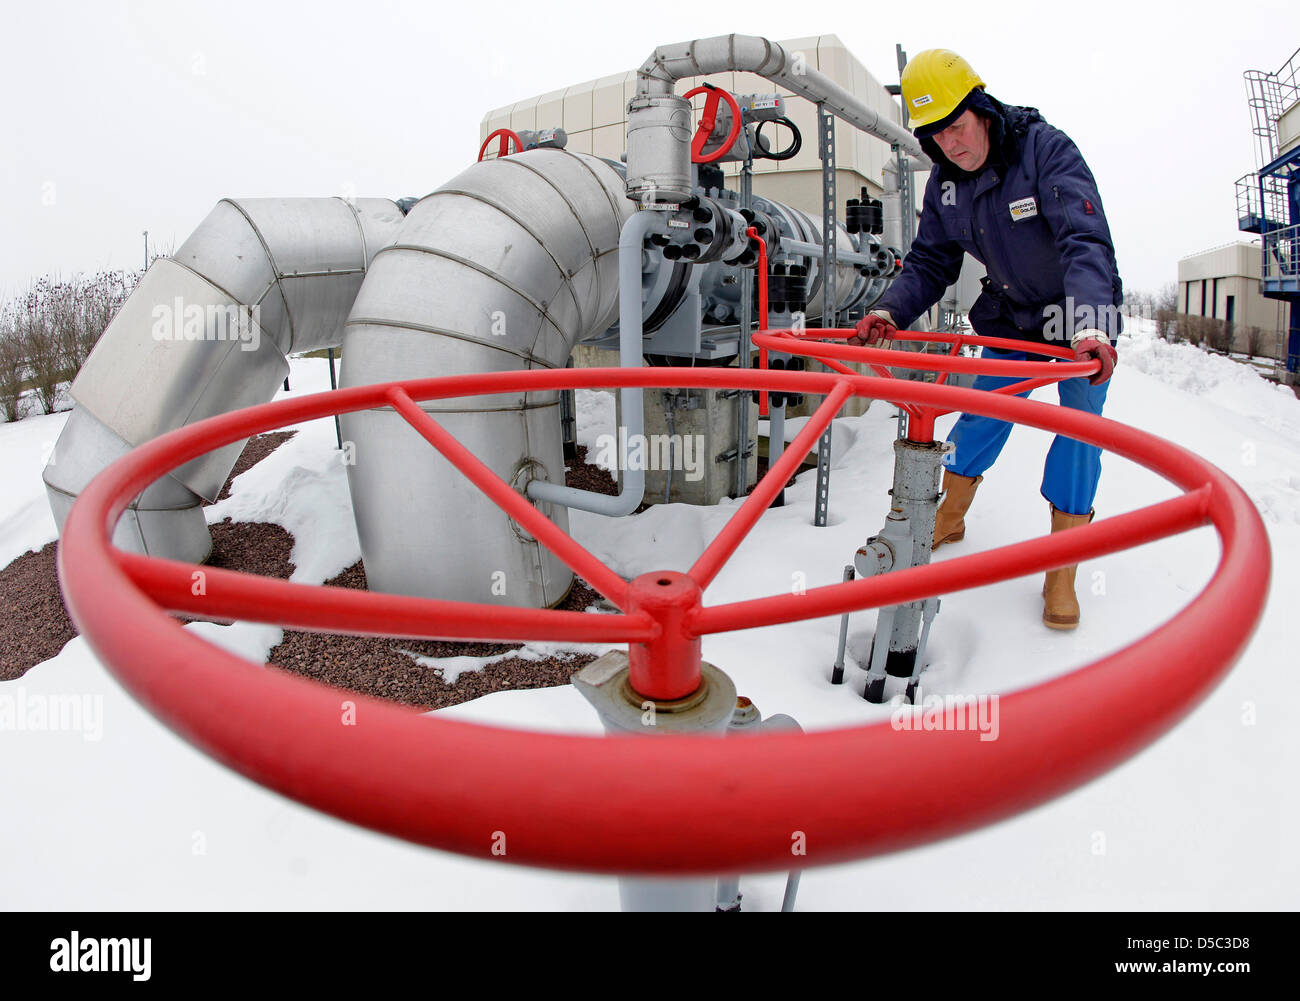 Eckhard Zingler técnico comprueba un turbo compresor de una turbina de gas en el depósito subterráneo de gas GNV en Bad Lauchstaedt, Alemania, el 27 de enero de 2010. El grupo de energía basados en Leipzig GNV amplía la exploración de los recursos de gas natural en Noruega. Los informes de la compañía el 28 de enero de 2010, se convertirá en accionista de tres licencias de exploración a través de su filial noruega. Foto: JAN WOITAS Foto de stock